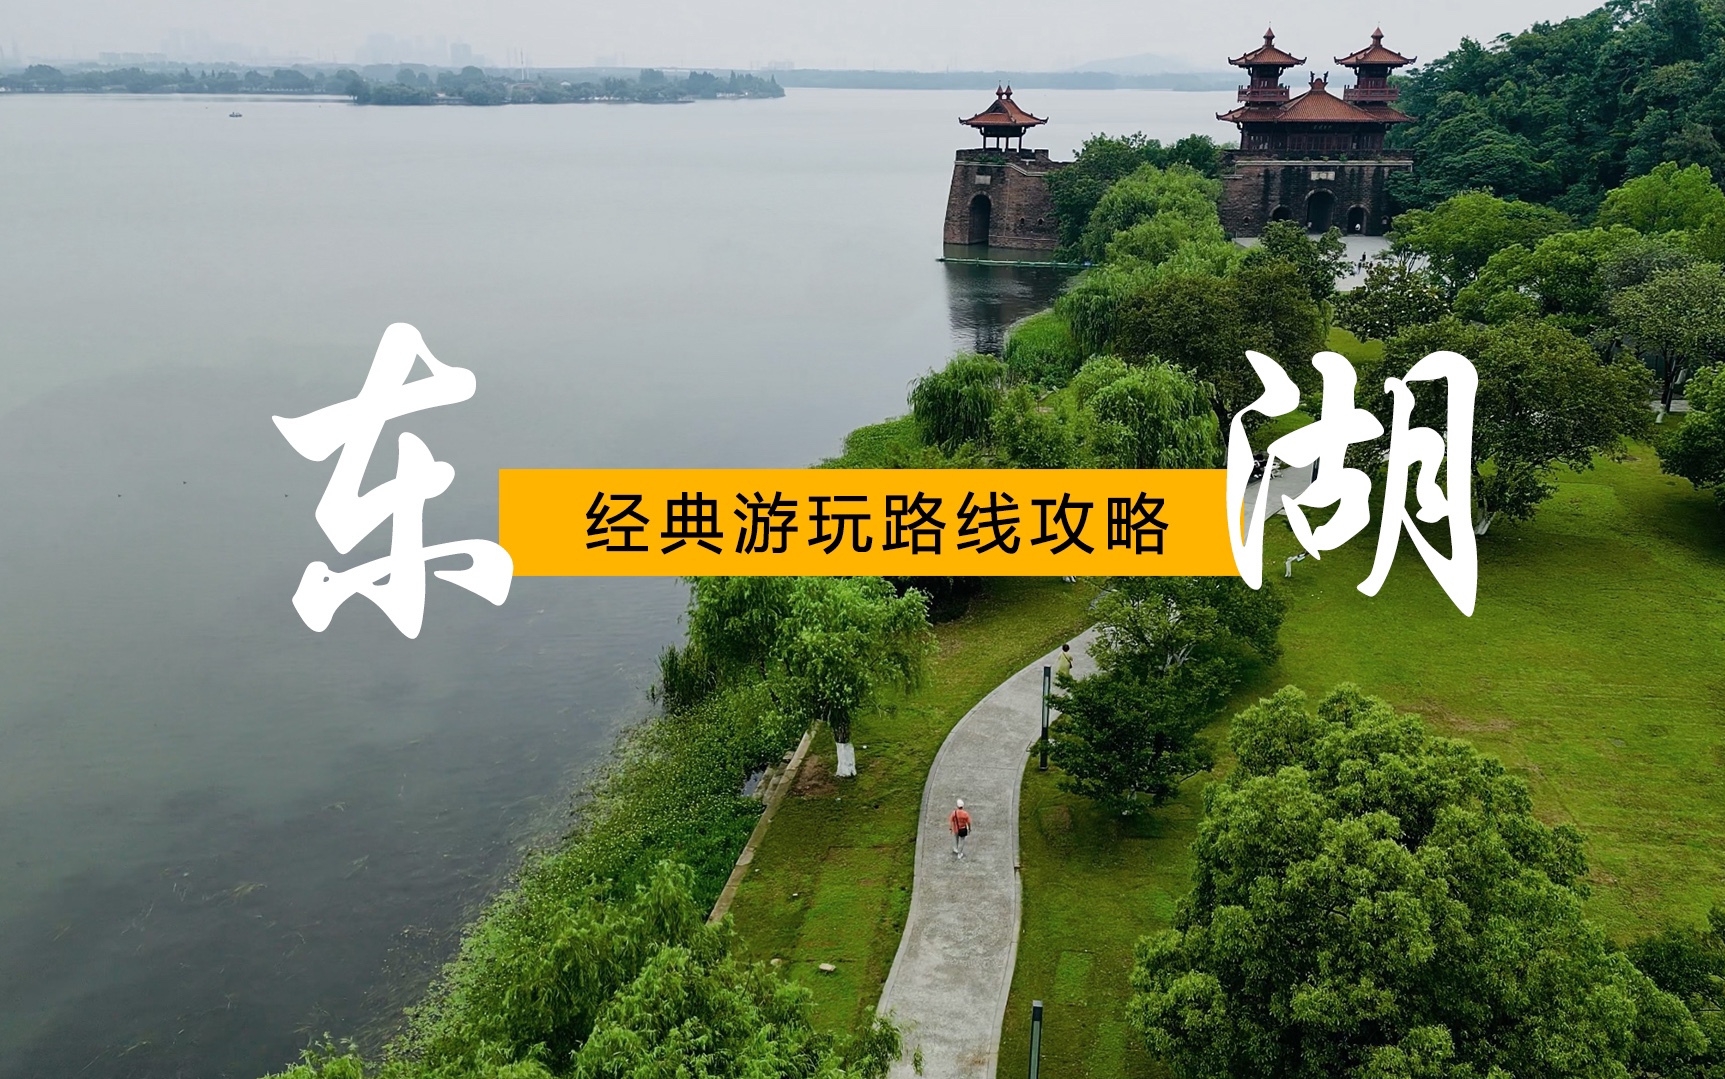 武汉本地人规划的东湖经典路线，观光车、骑行、索道、滑道、东湖之眼、游船一个不落。